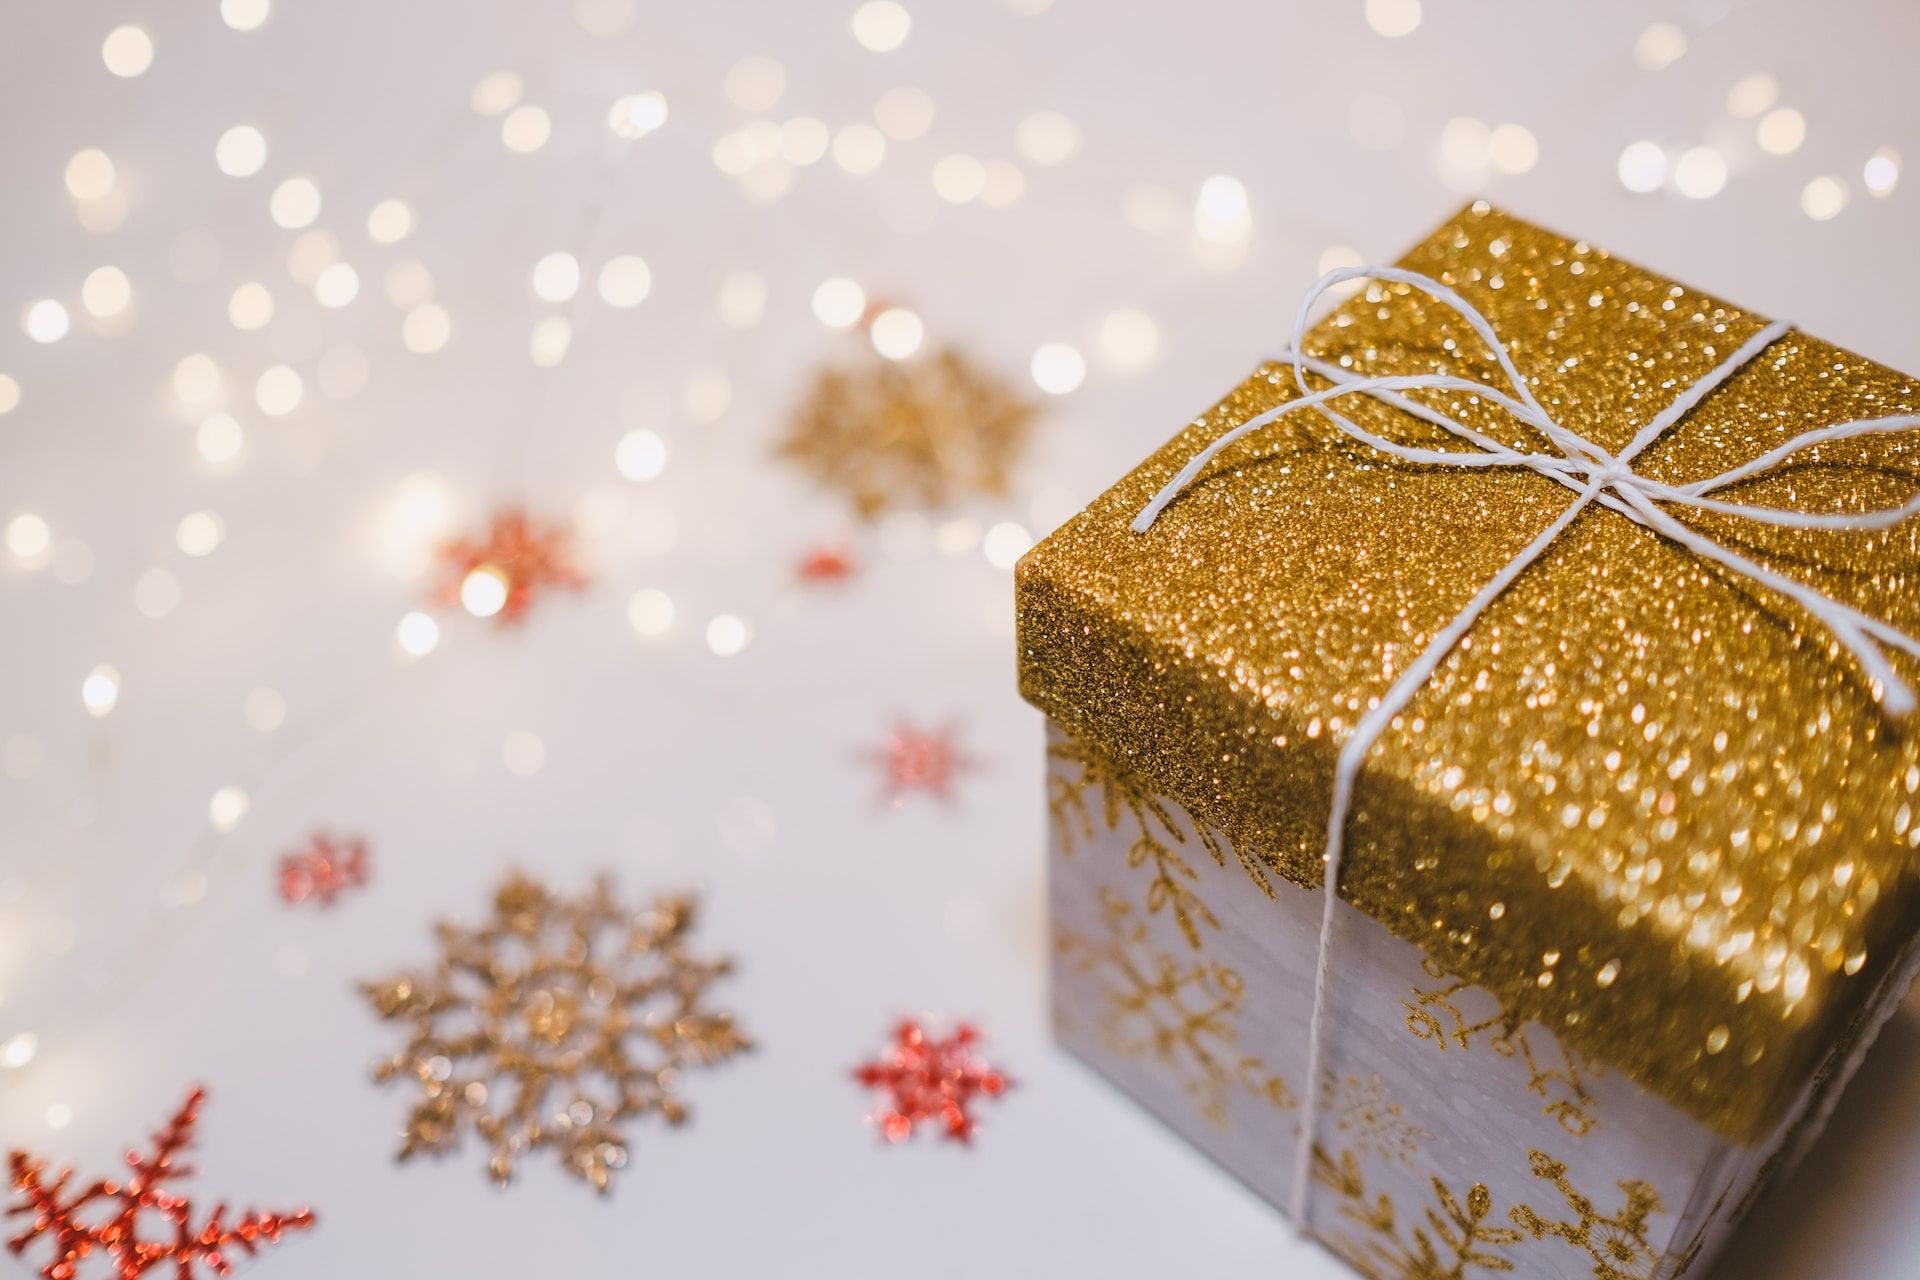 Un cadeau de Noël tout doré - Photo de freestocks sur https://unsplash.com/fr/photos/k-Rp0V0XWWU